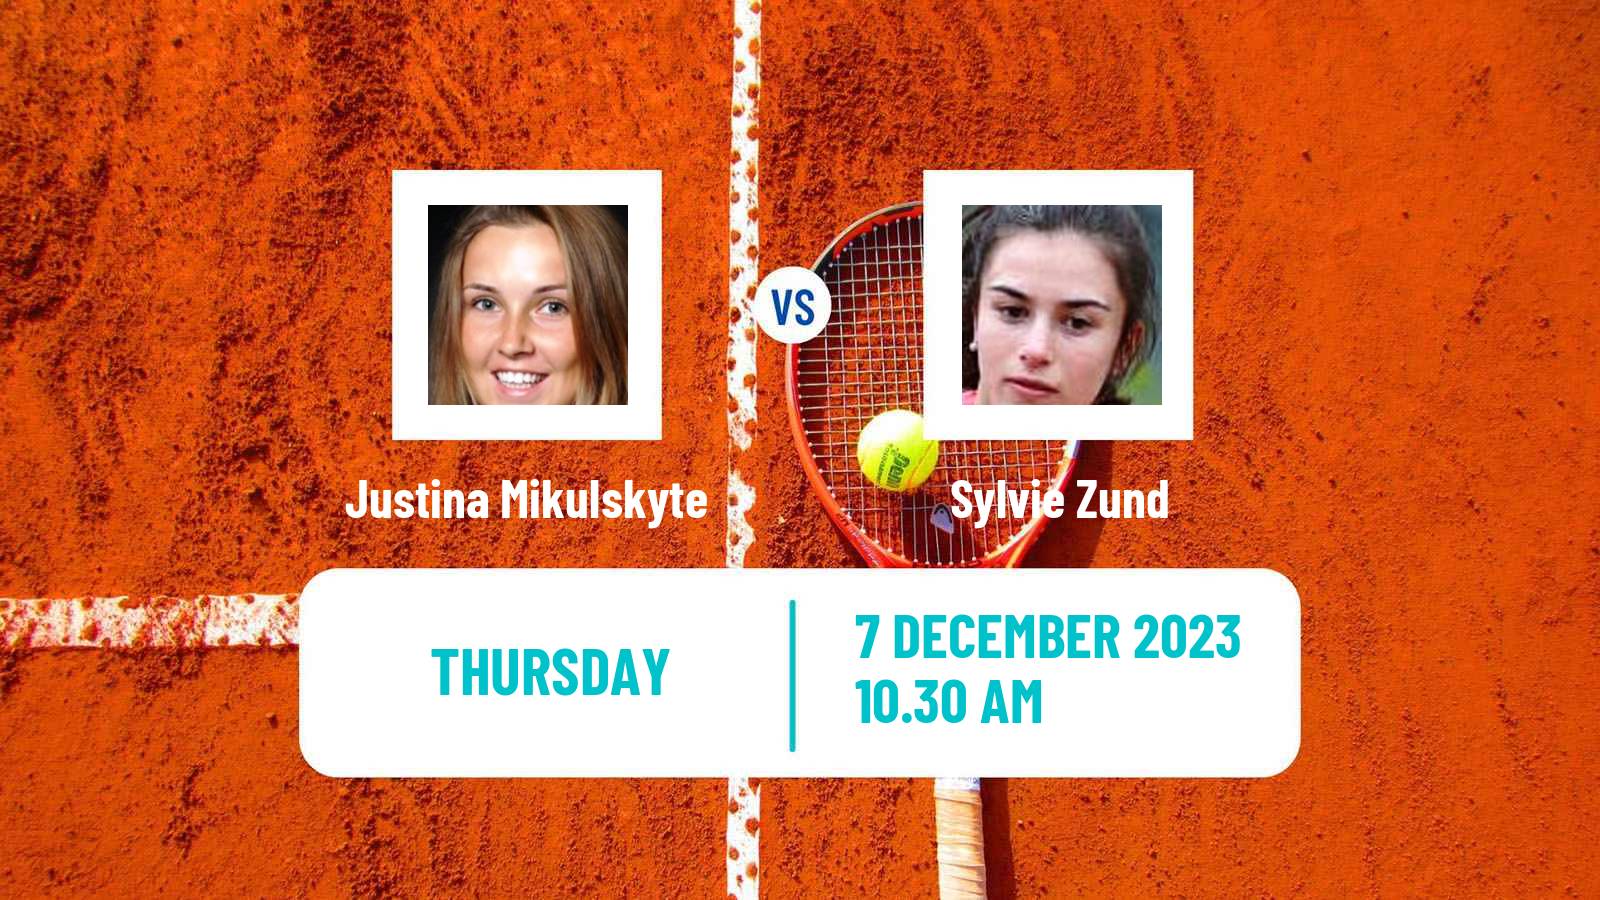 Tennis ITF W25 Mogi Das Cruzes Women Justina Mikulskyte - Sylvie Zund